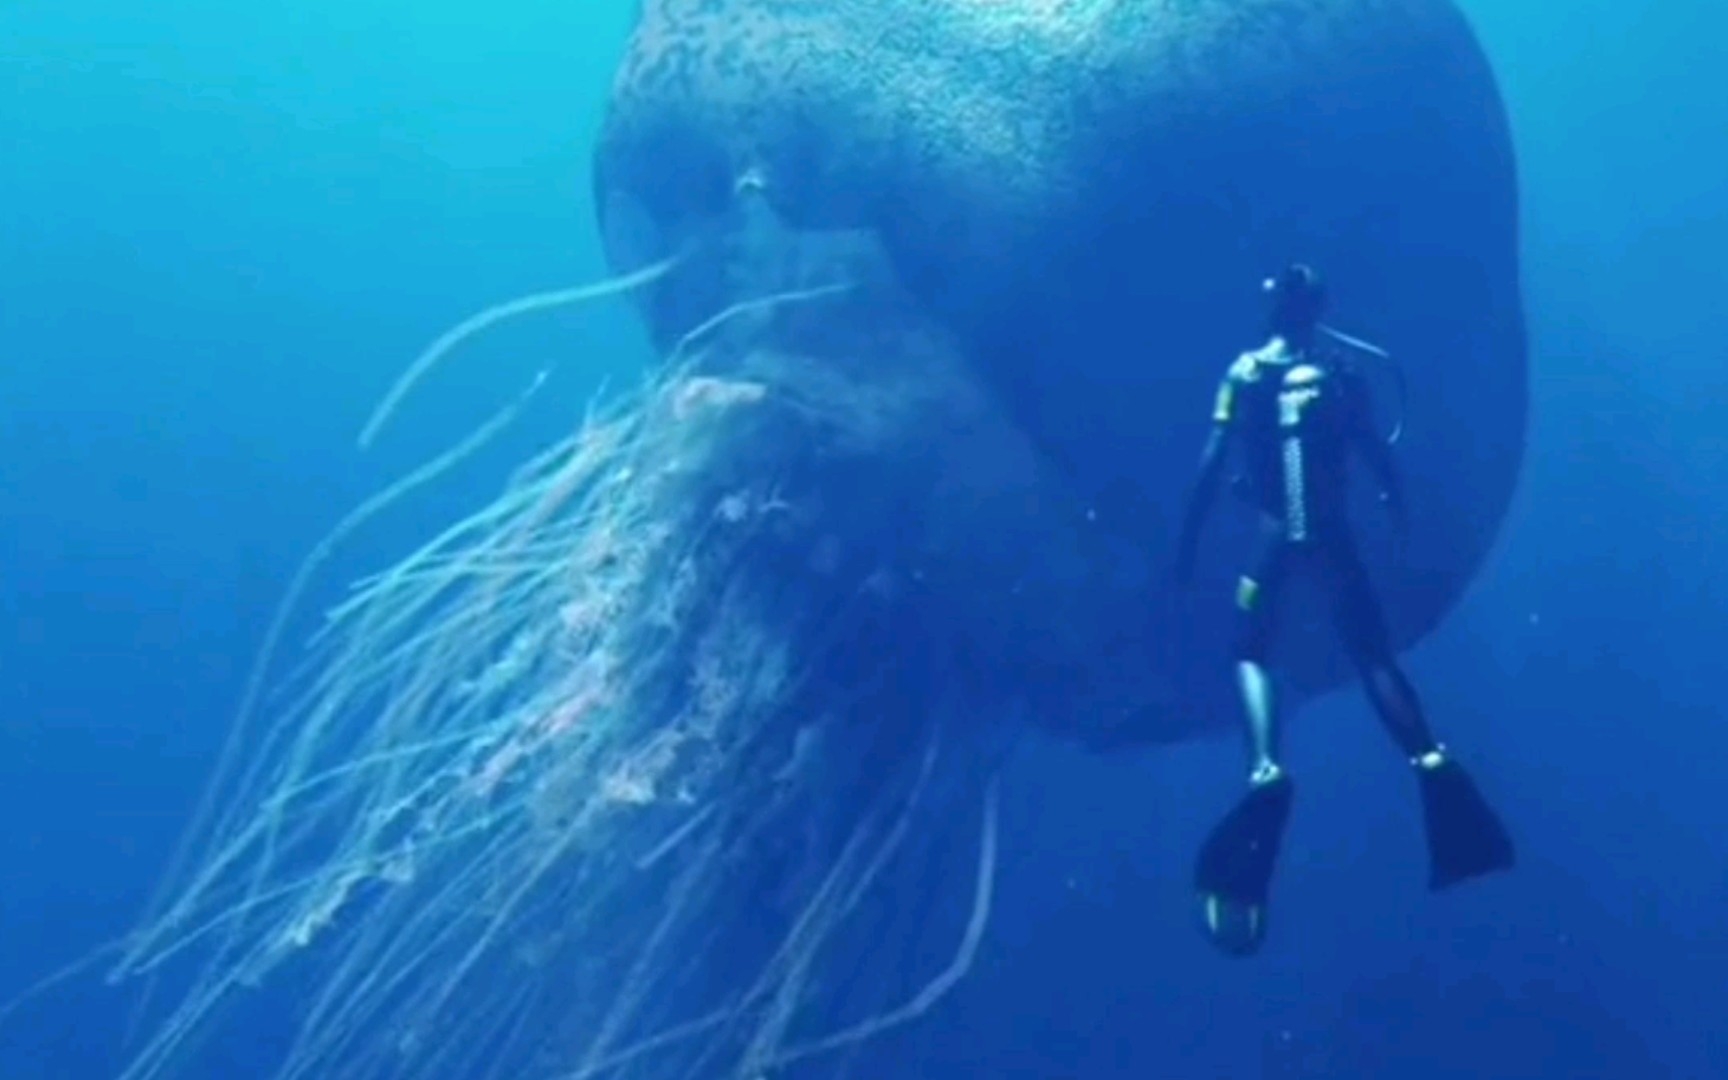 有哪些深海恐惧症看了会害怕的图片？ - 知乎